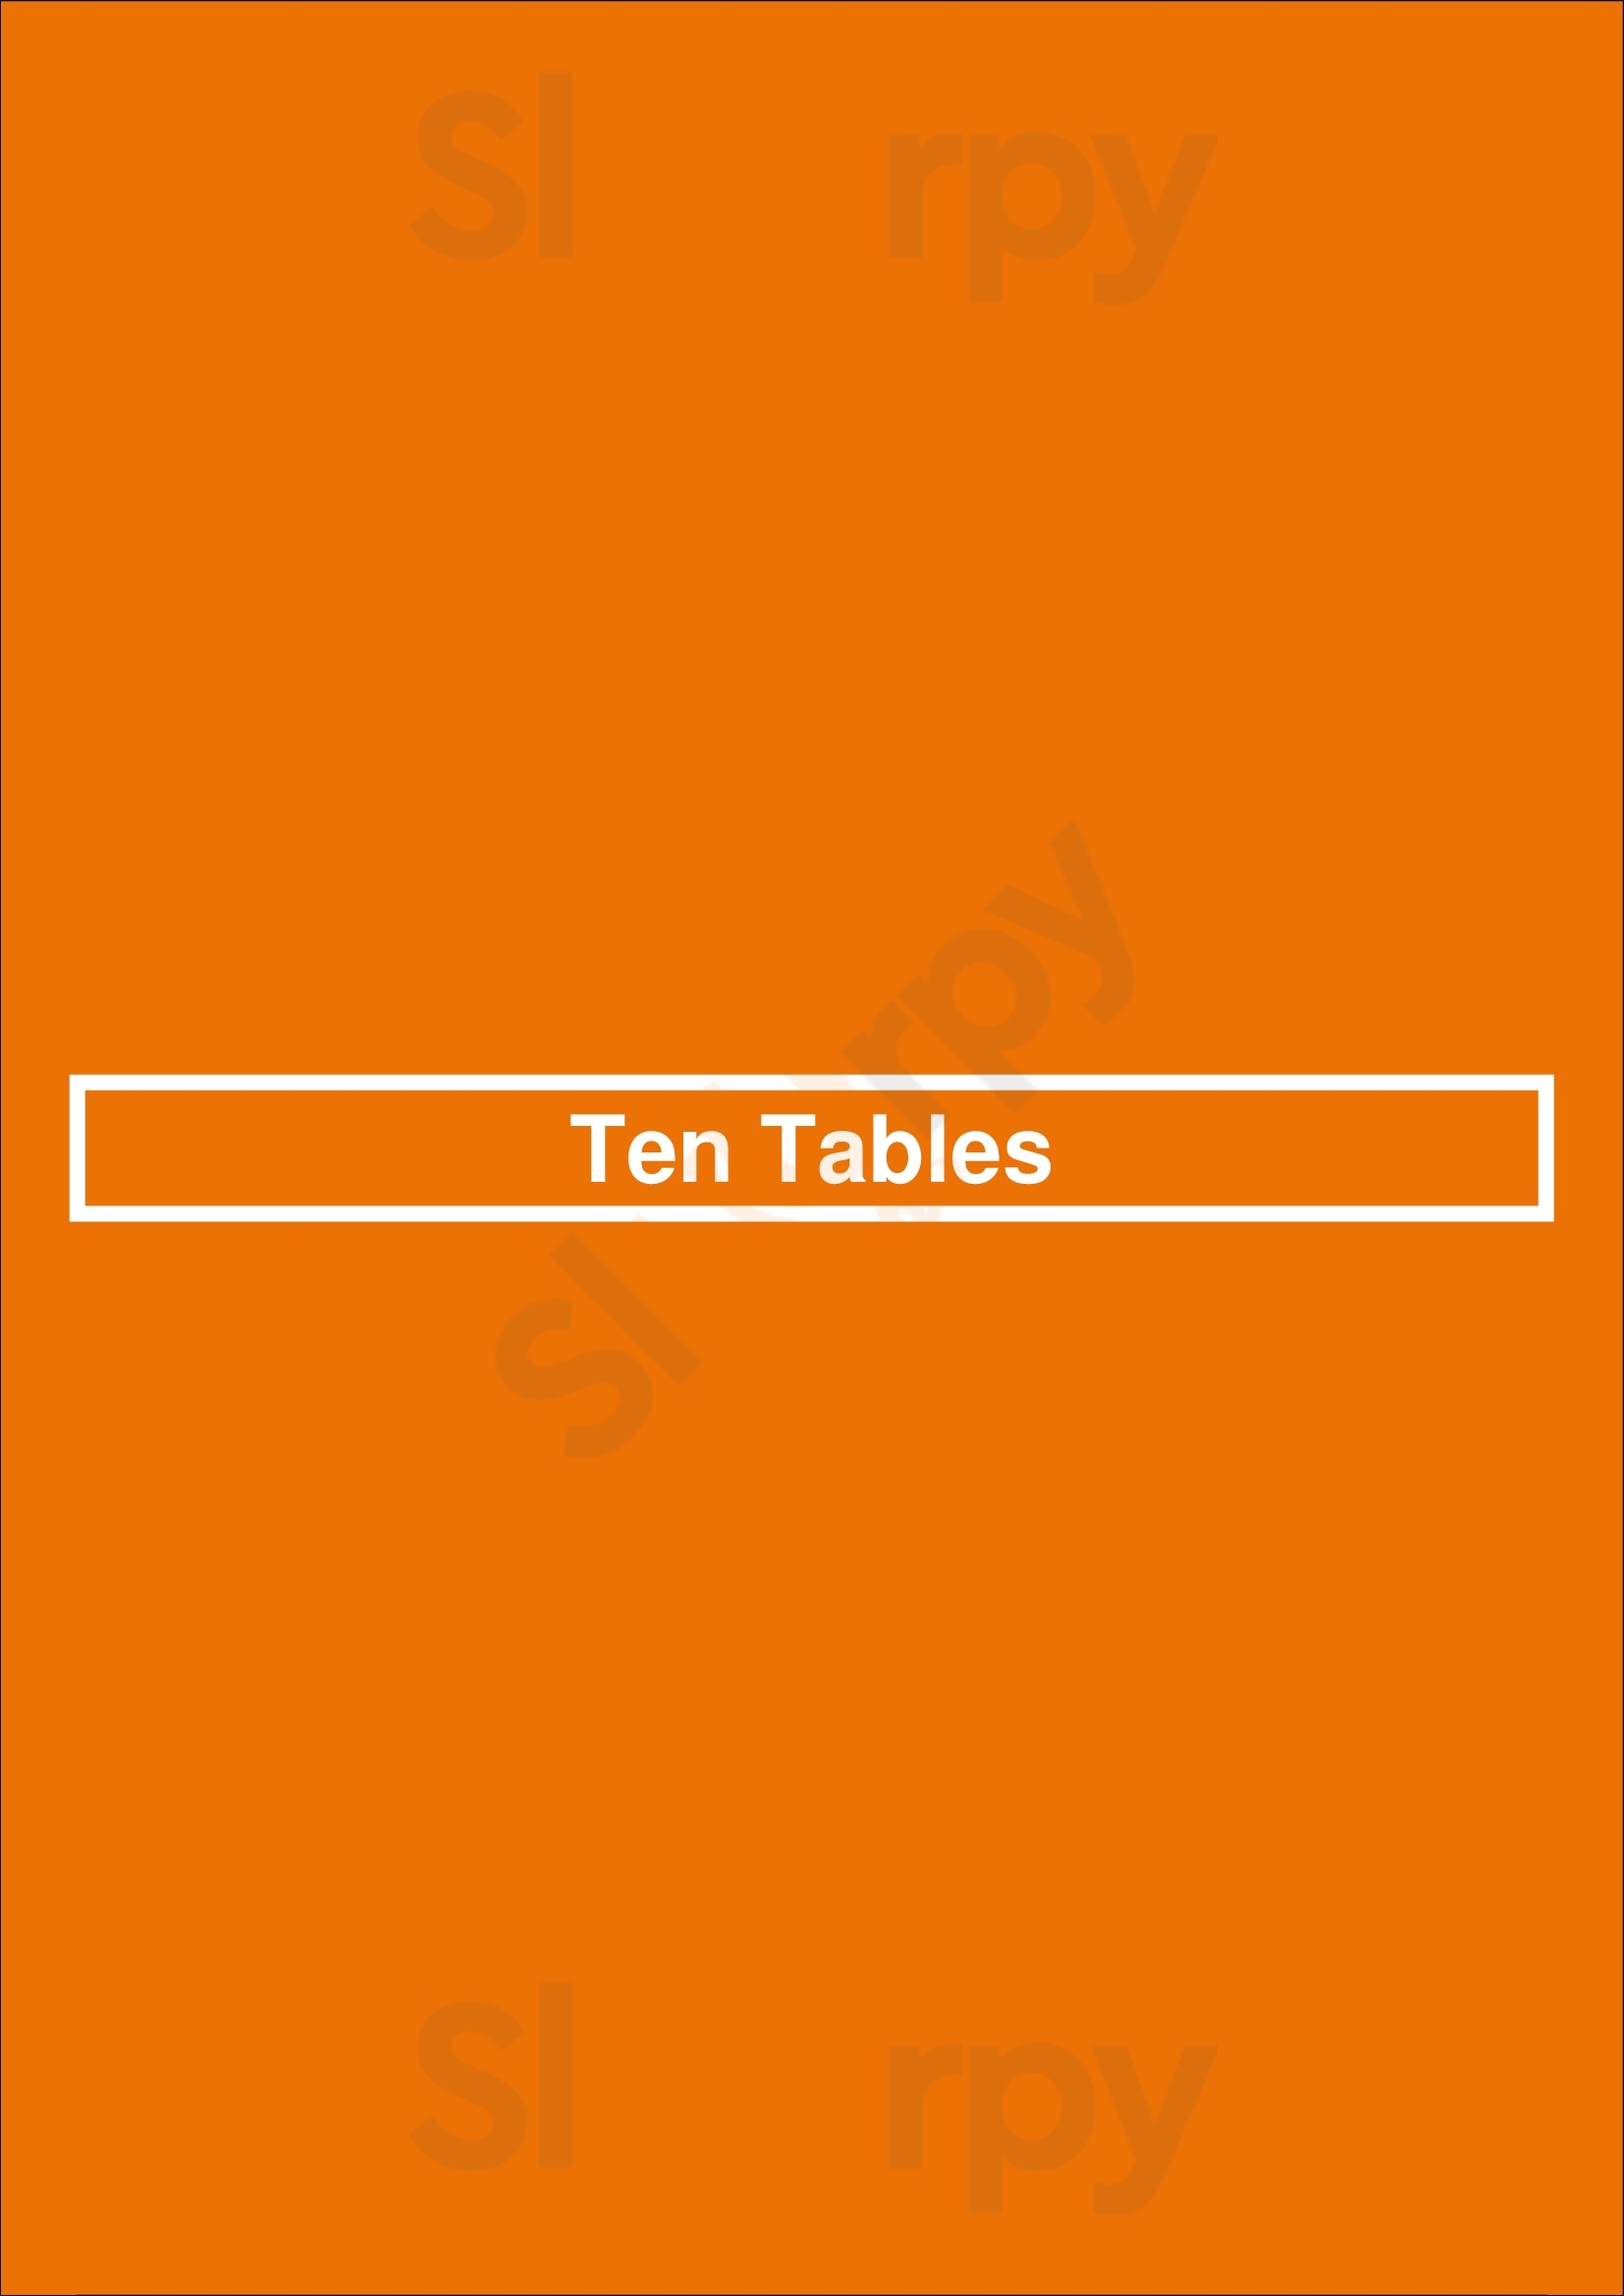 Ten Tables Boston Menu - 1